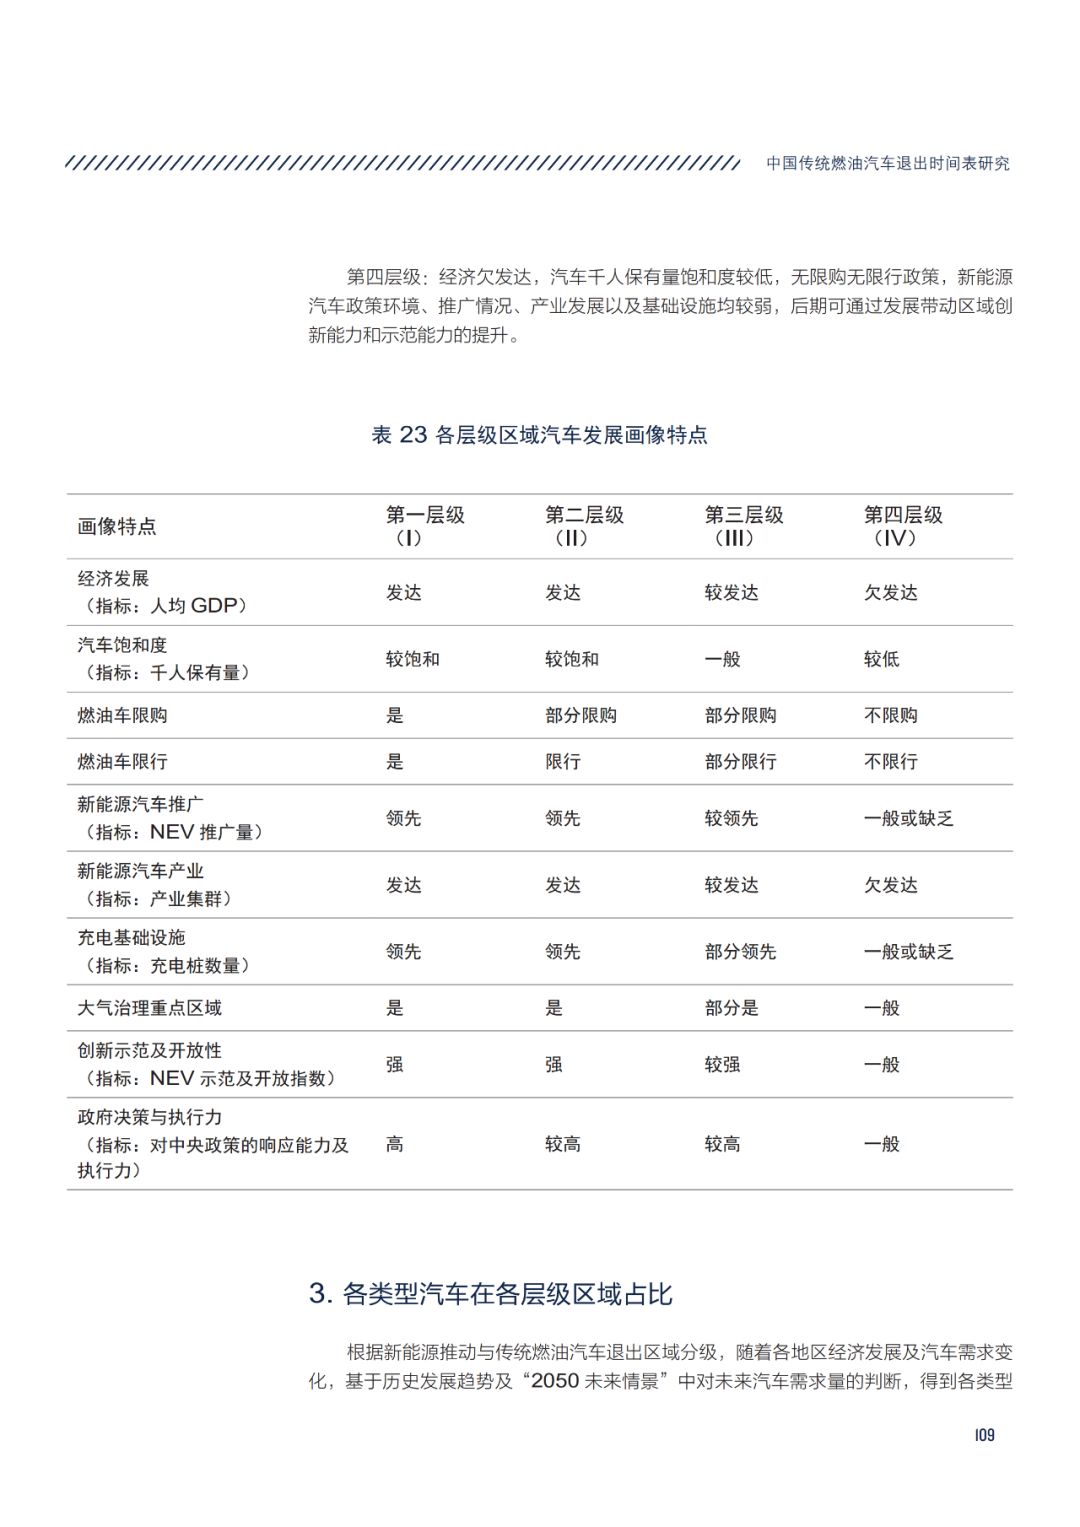 首份中国传统燃油车退出时间表(附全文下载链接)